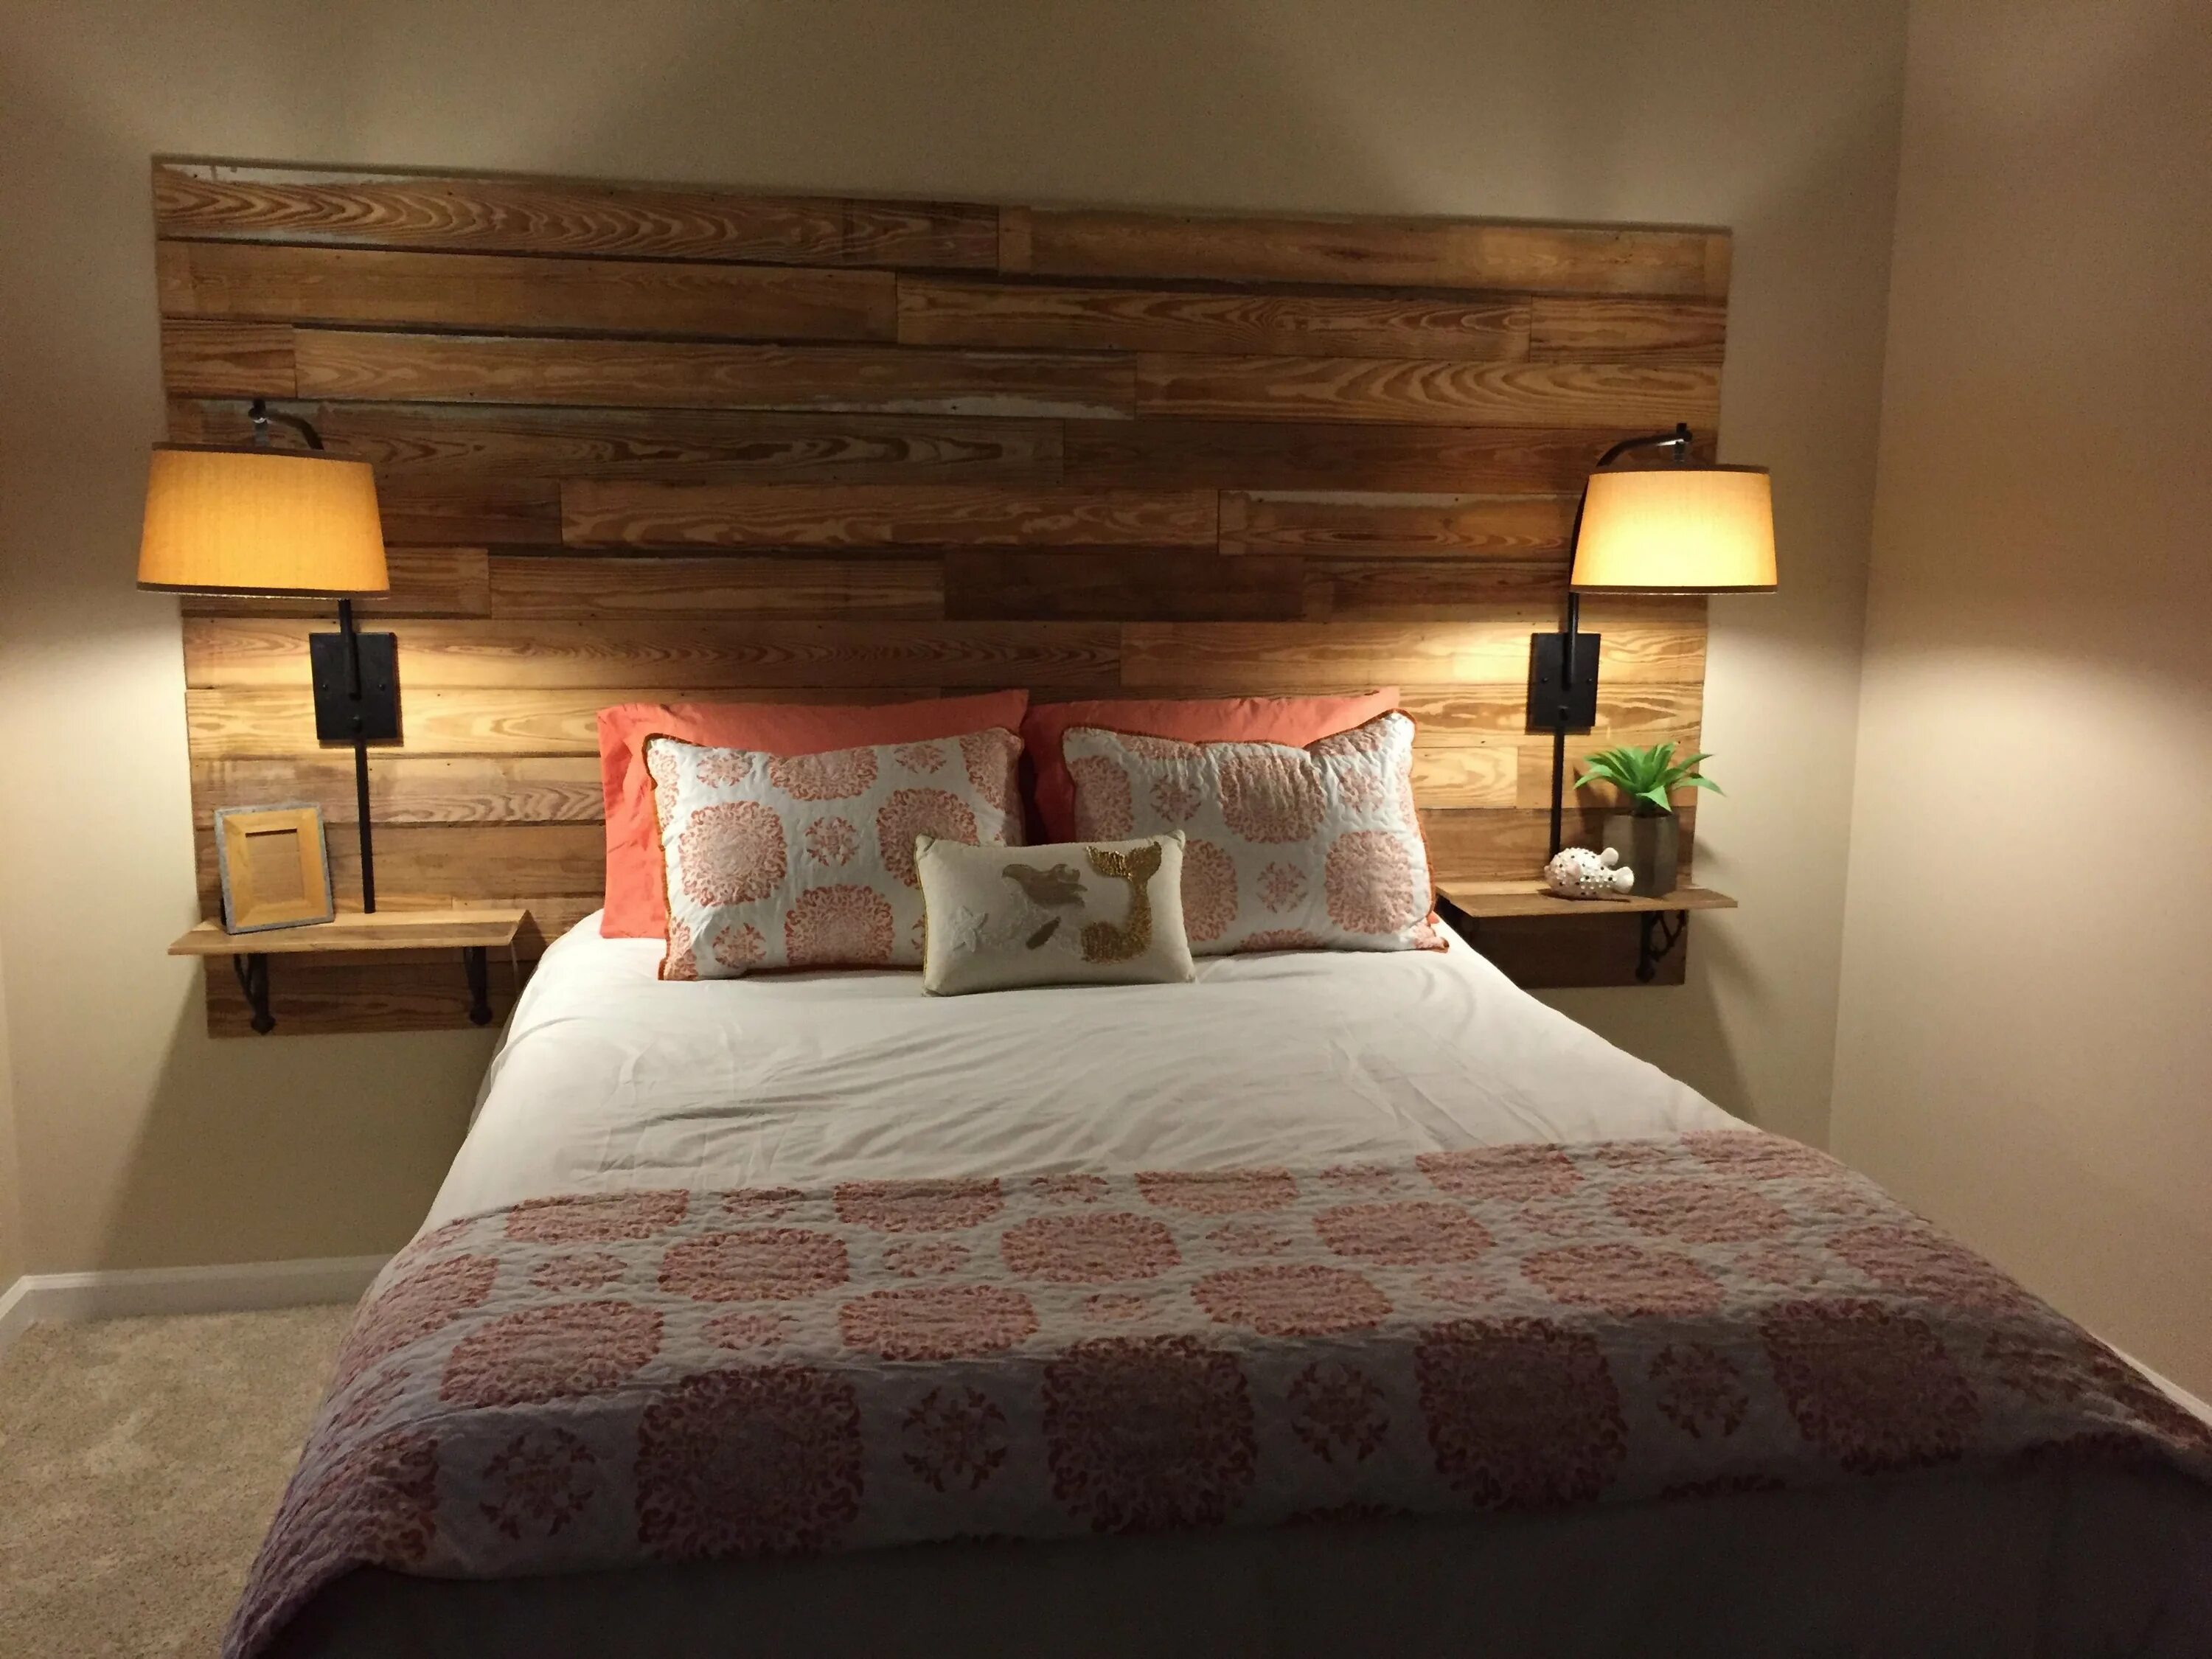 Изголовье кровати из дерева. Деревянное изголовье. Кровать с деревянным изголовьем. Деревянная стена в спальне.